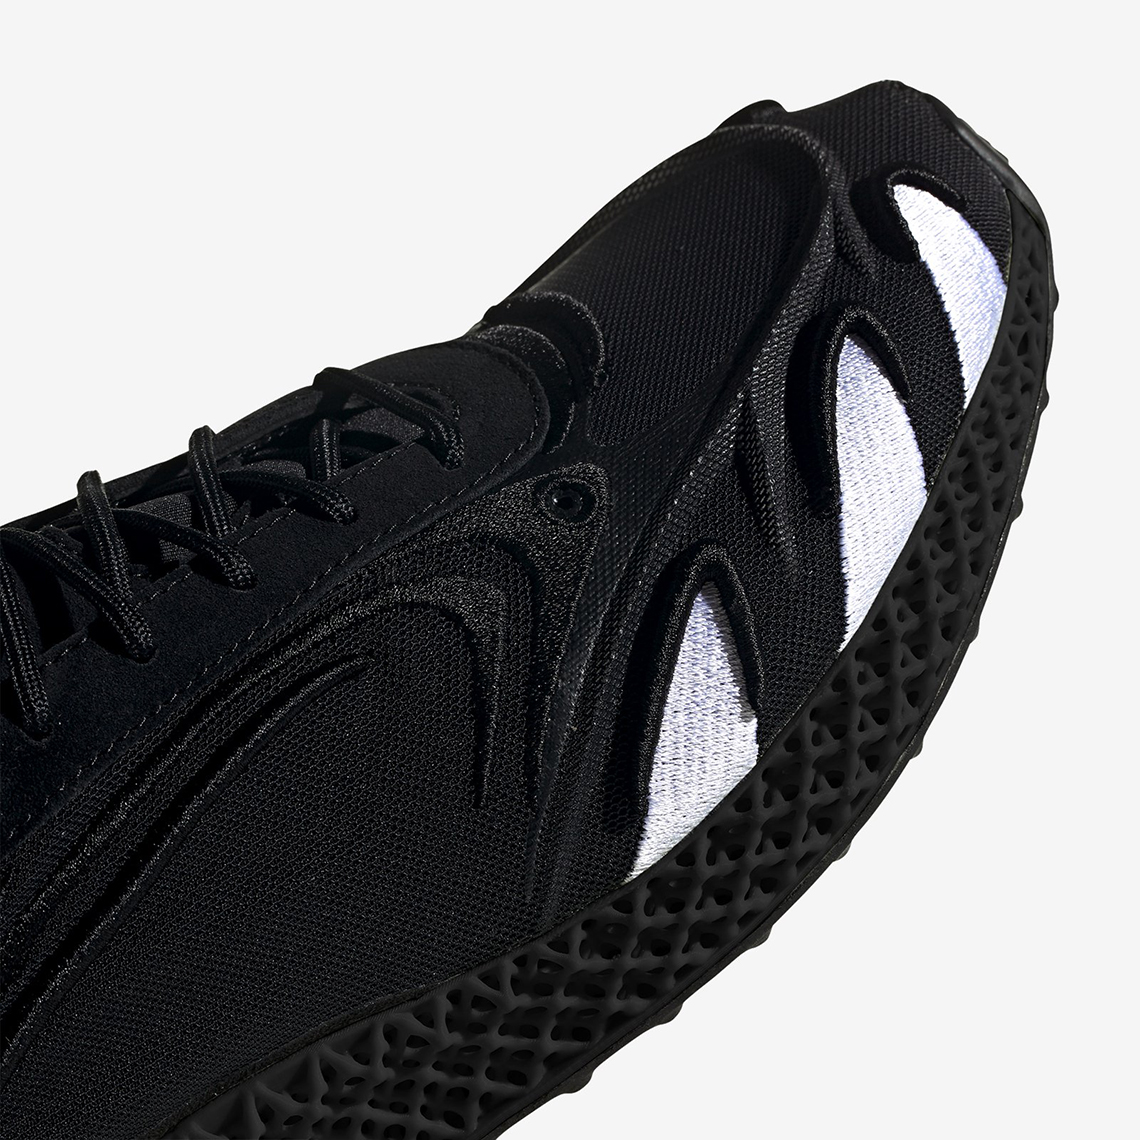 Adidas Y 3 Runner 4d Fu9207 Black Release Date 1